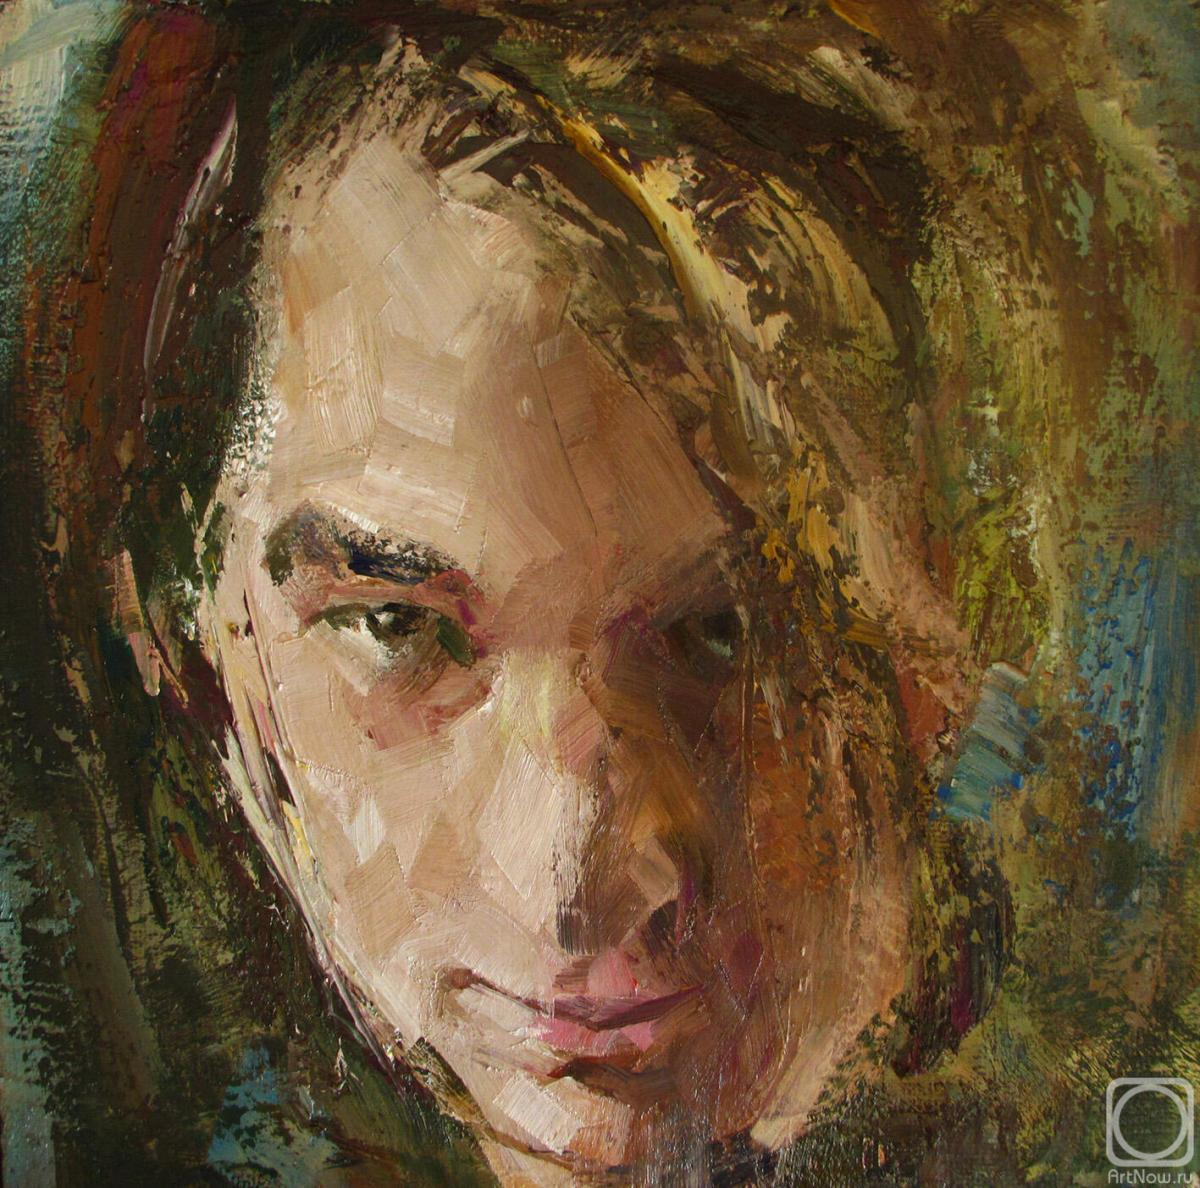 Mishura Vladimir. Portrait f young man